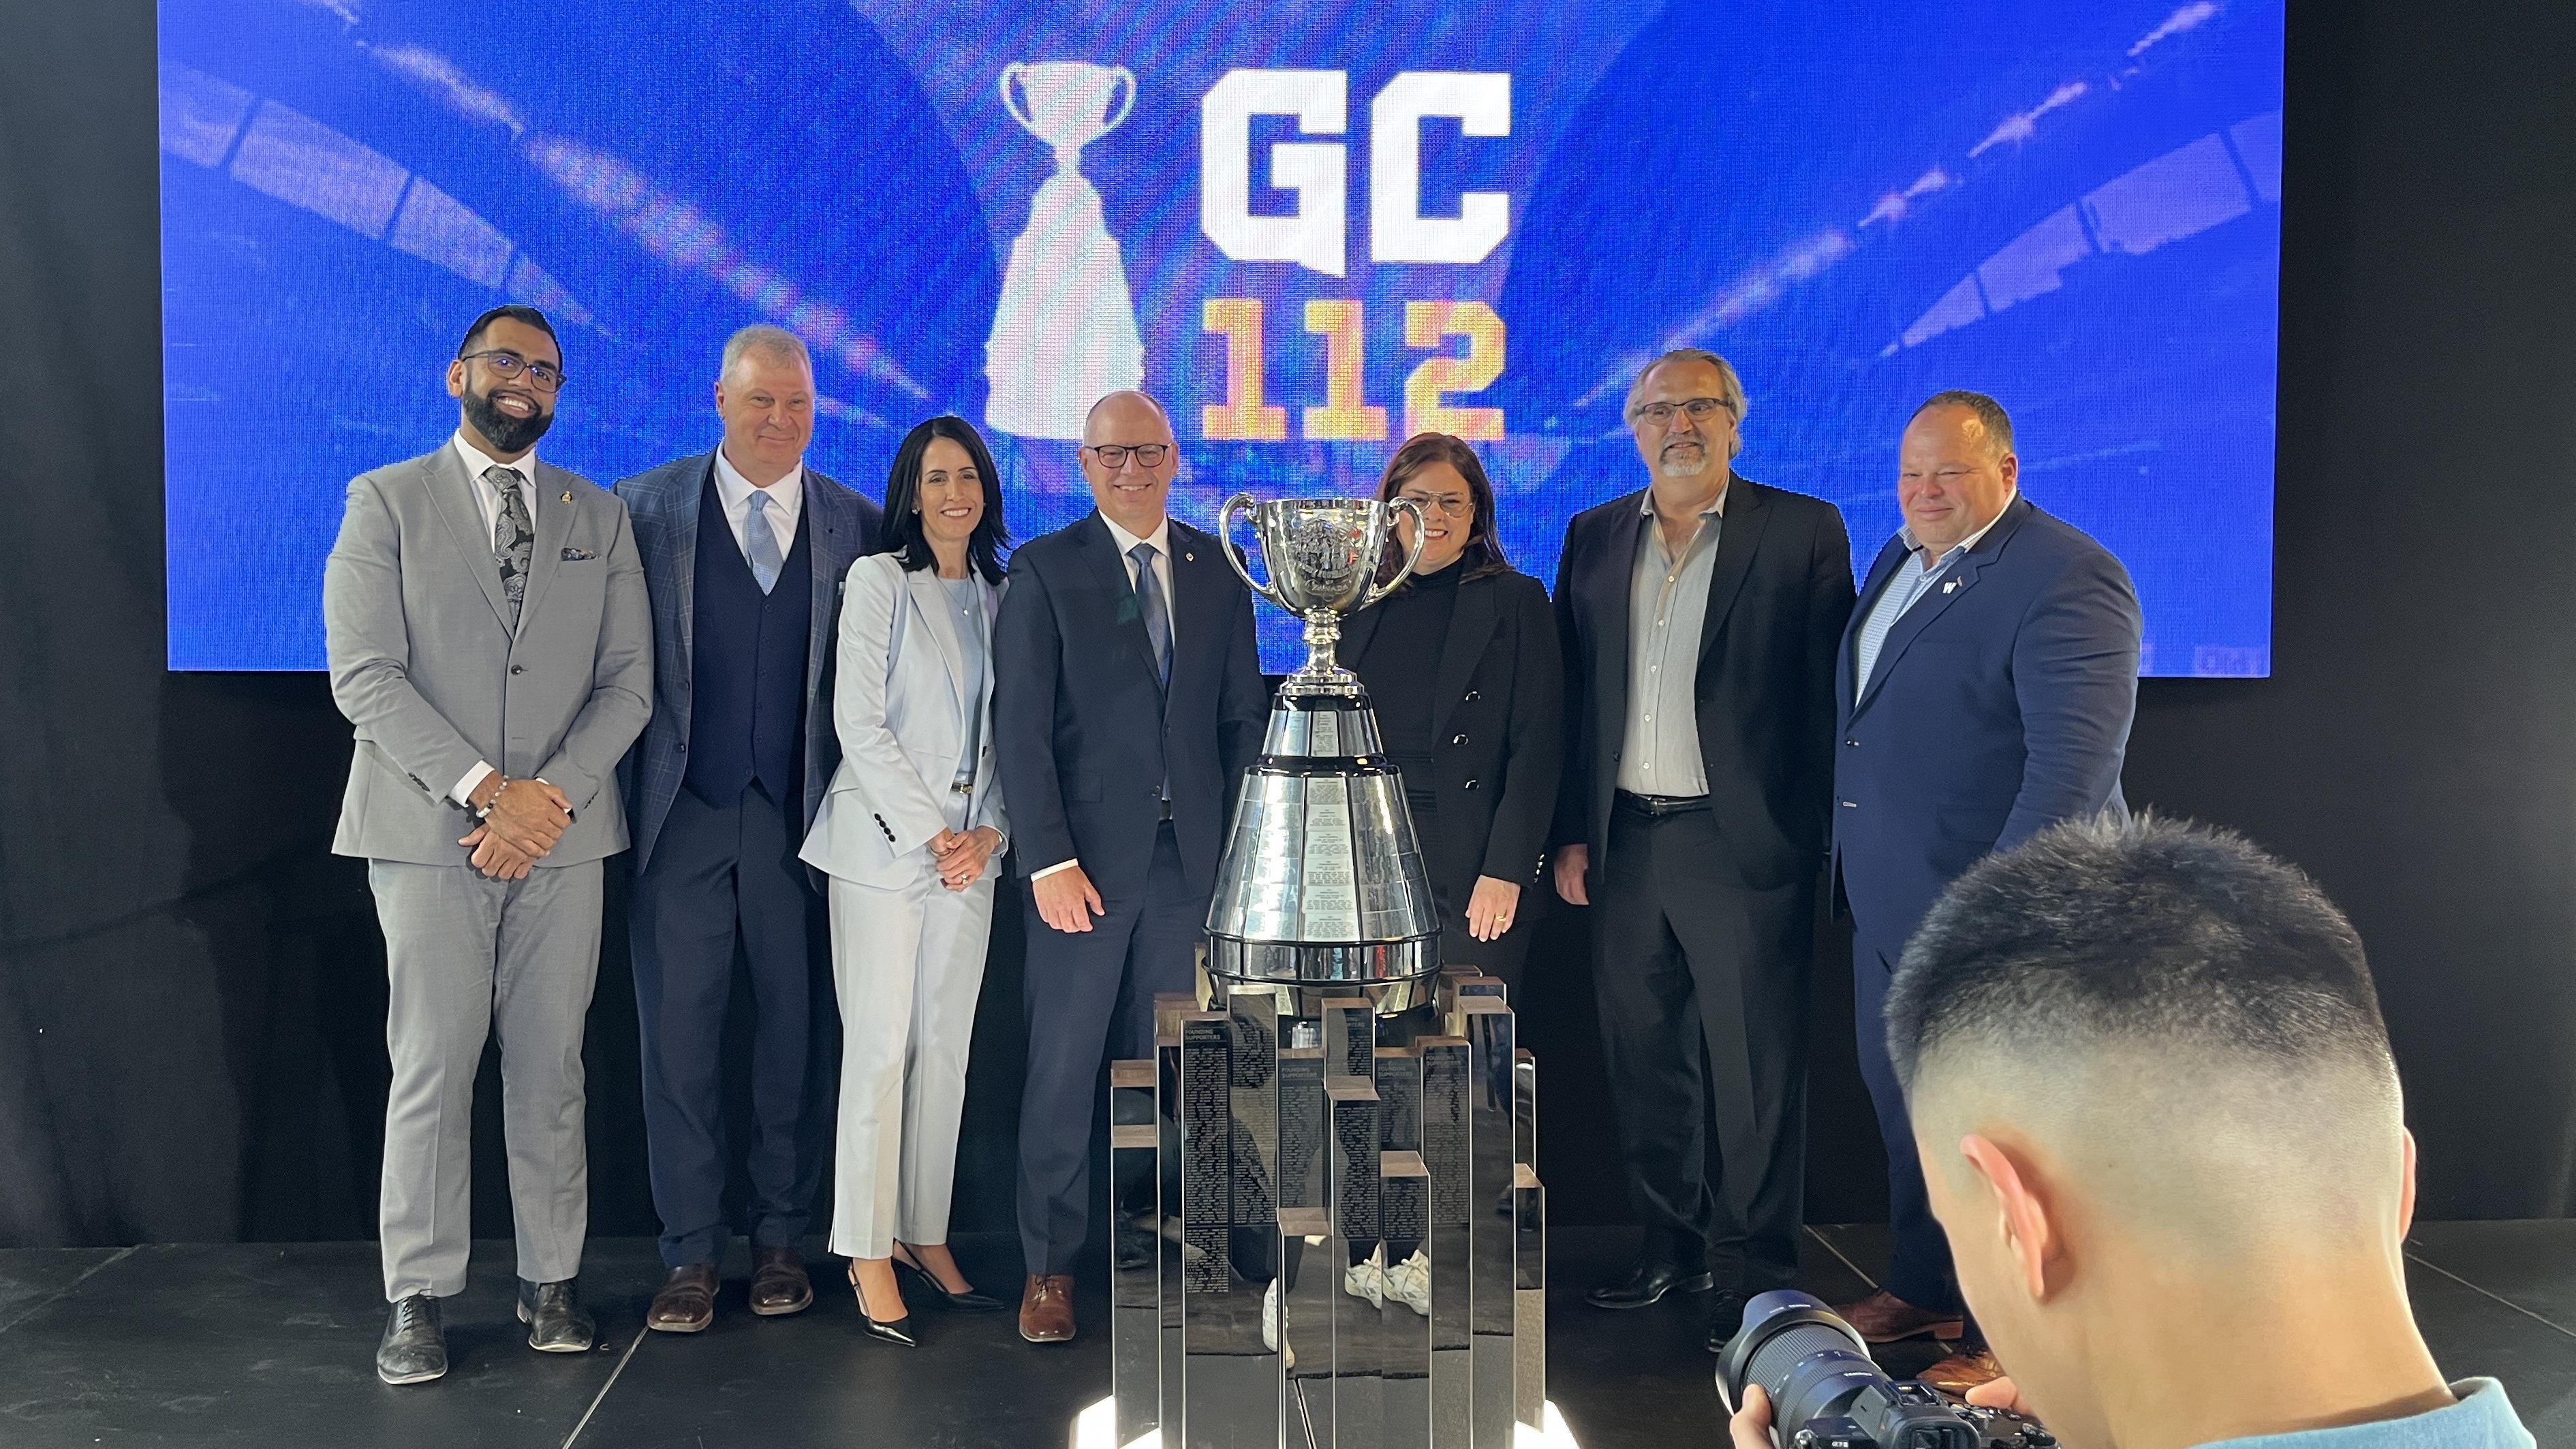 Coupe Grey 2025 : le choix s'arrête sur Winnipeg
Coupe Grey 2025 : le choix s'arrête sur Winnipeg